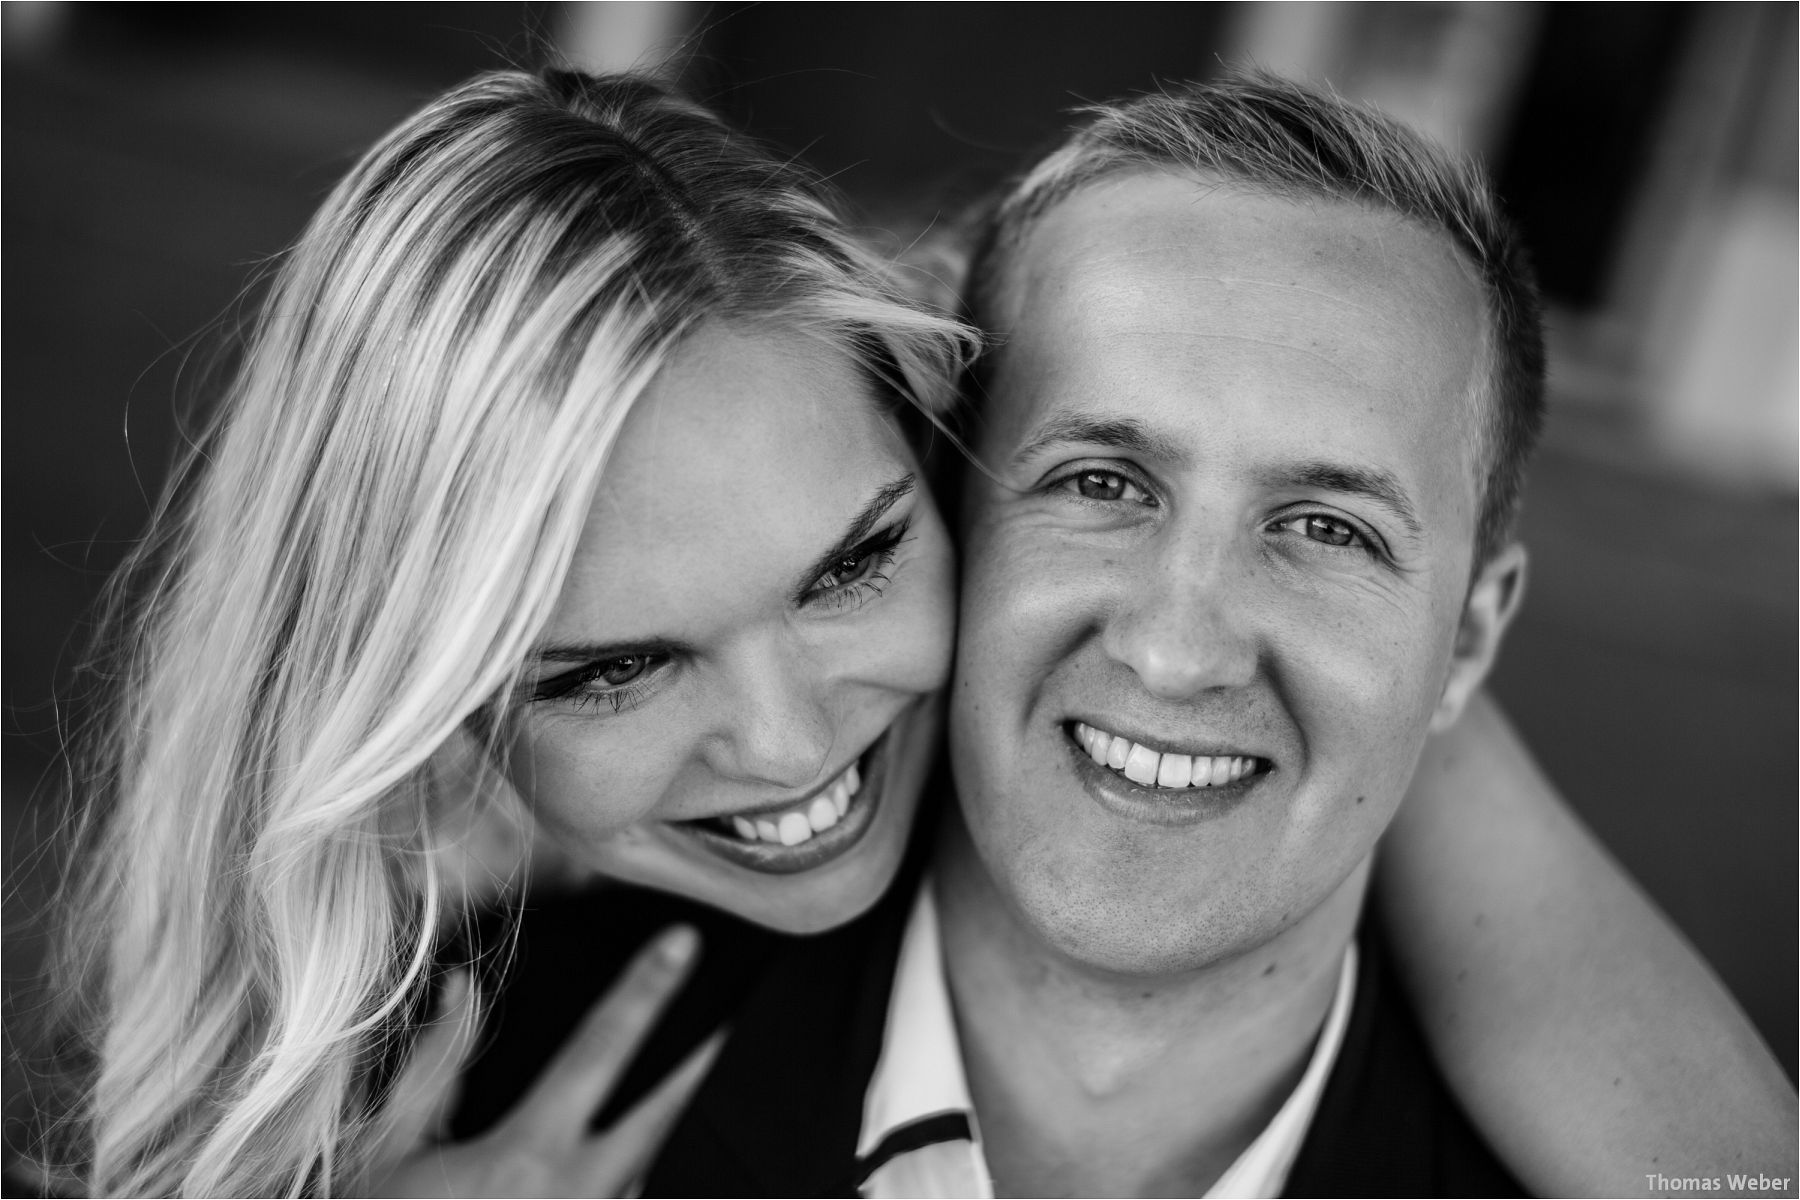 Hochzeitsfotograf Thomas Weber aus Oldenburg: Engagement-Fotos und Paarfotos eines angehenden Hochzeitspaares